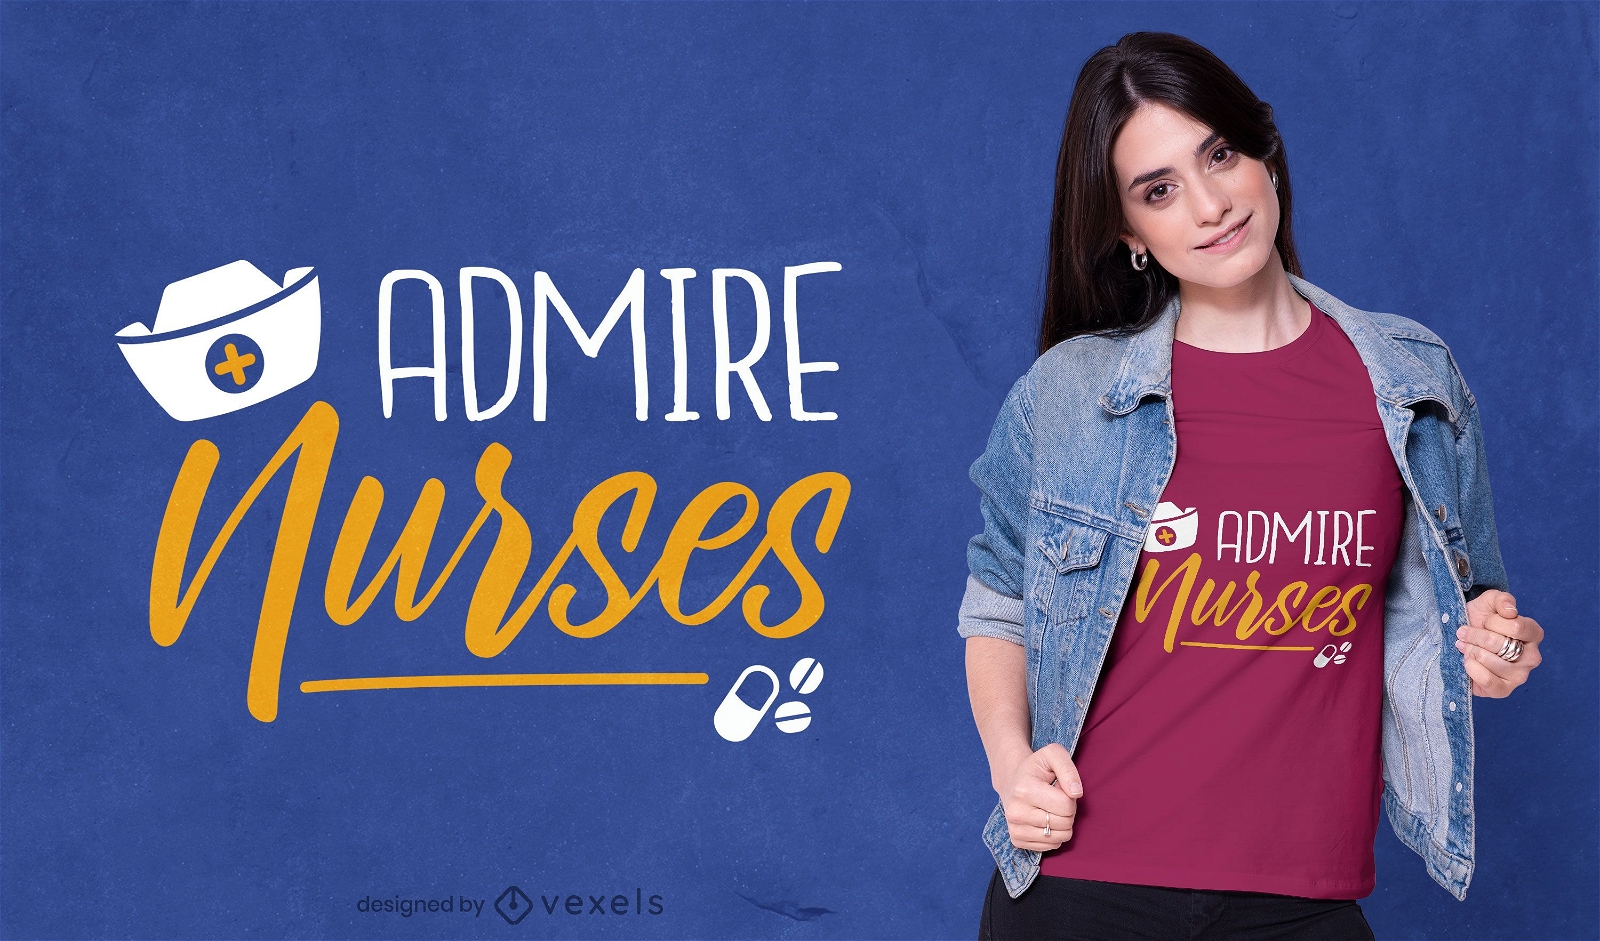 Admire nurses t-shirt design